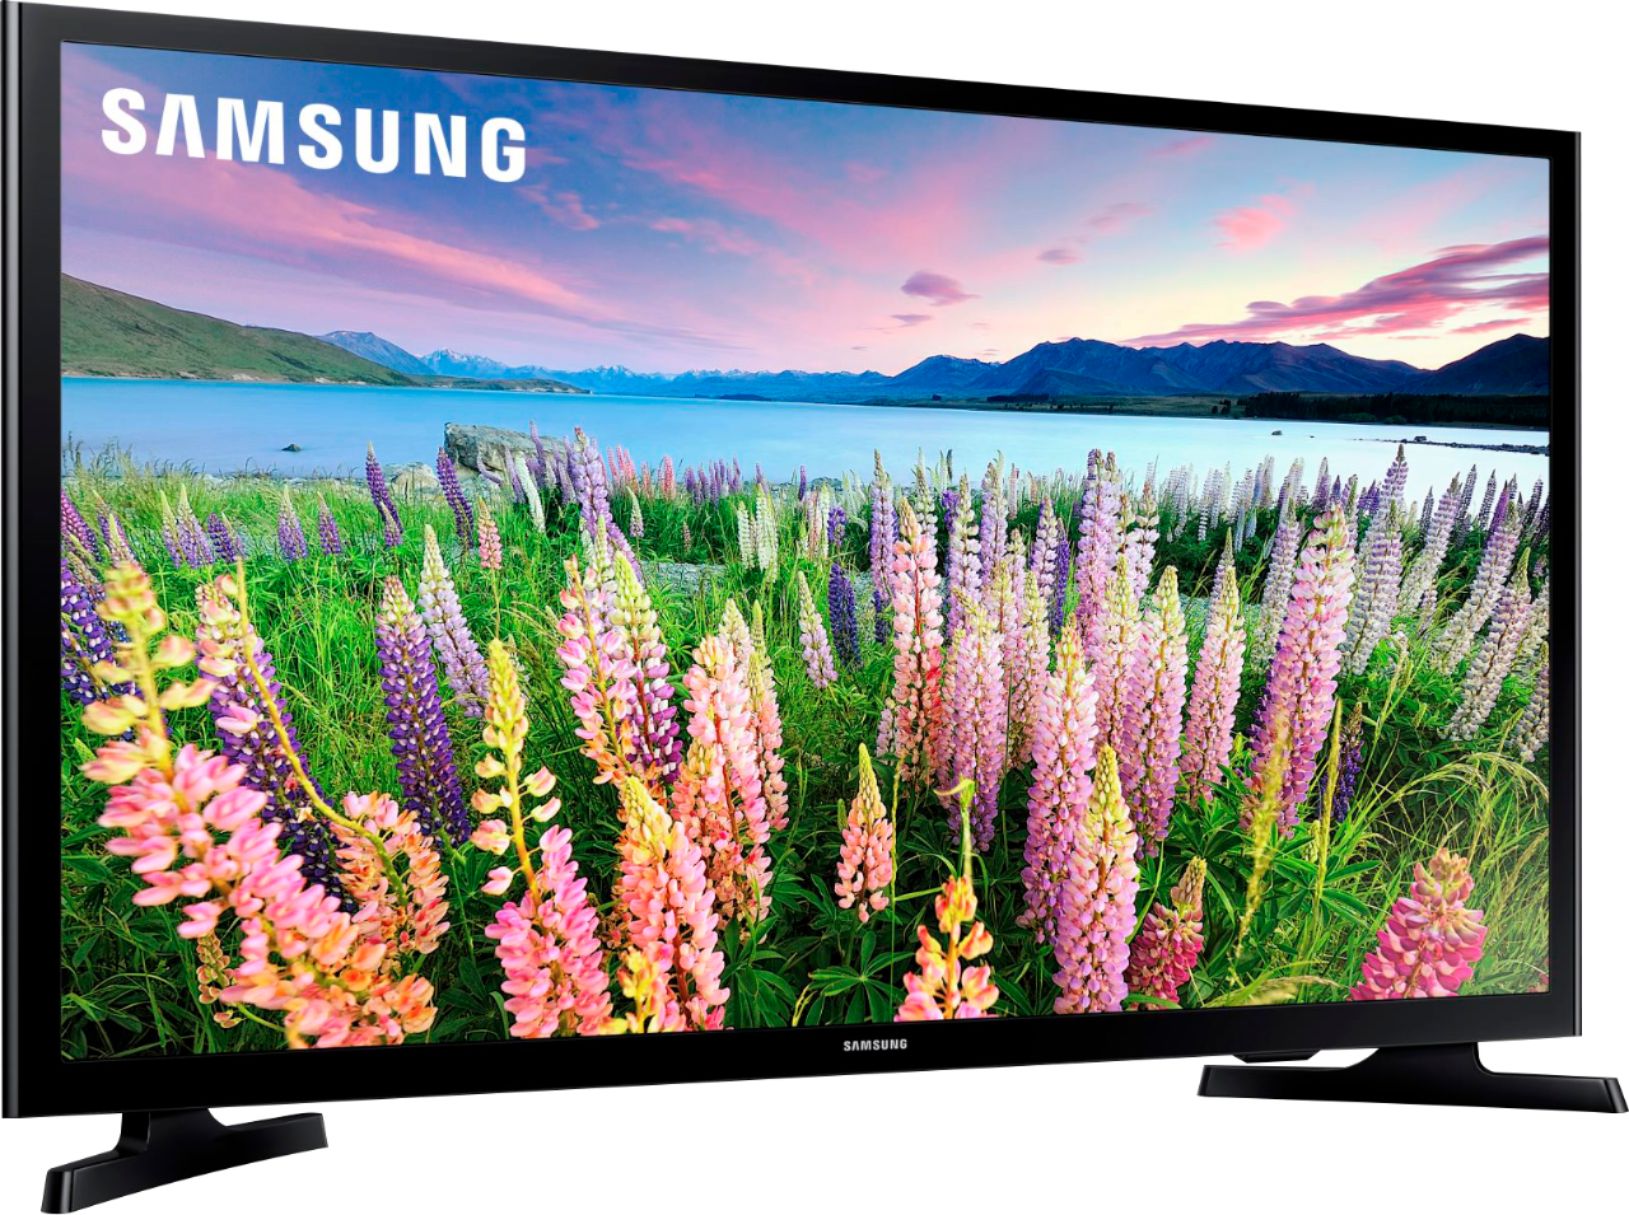 Samsung 40 Class 5 Series Led Full Hd Smart Tizen Tv Un40n5200afxza Best Buy